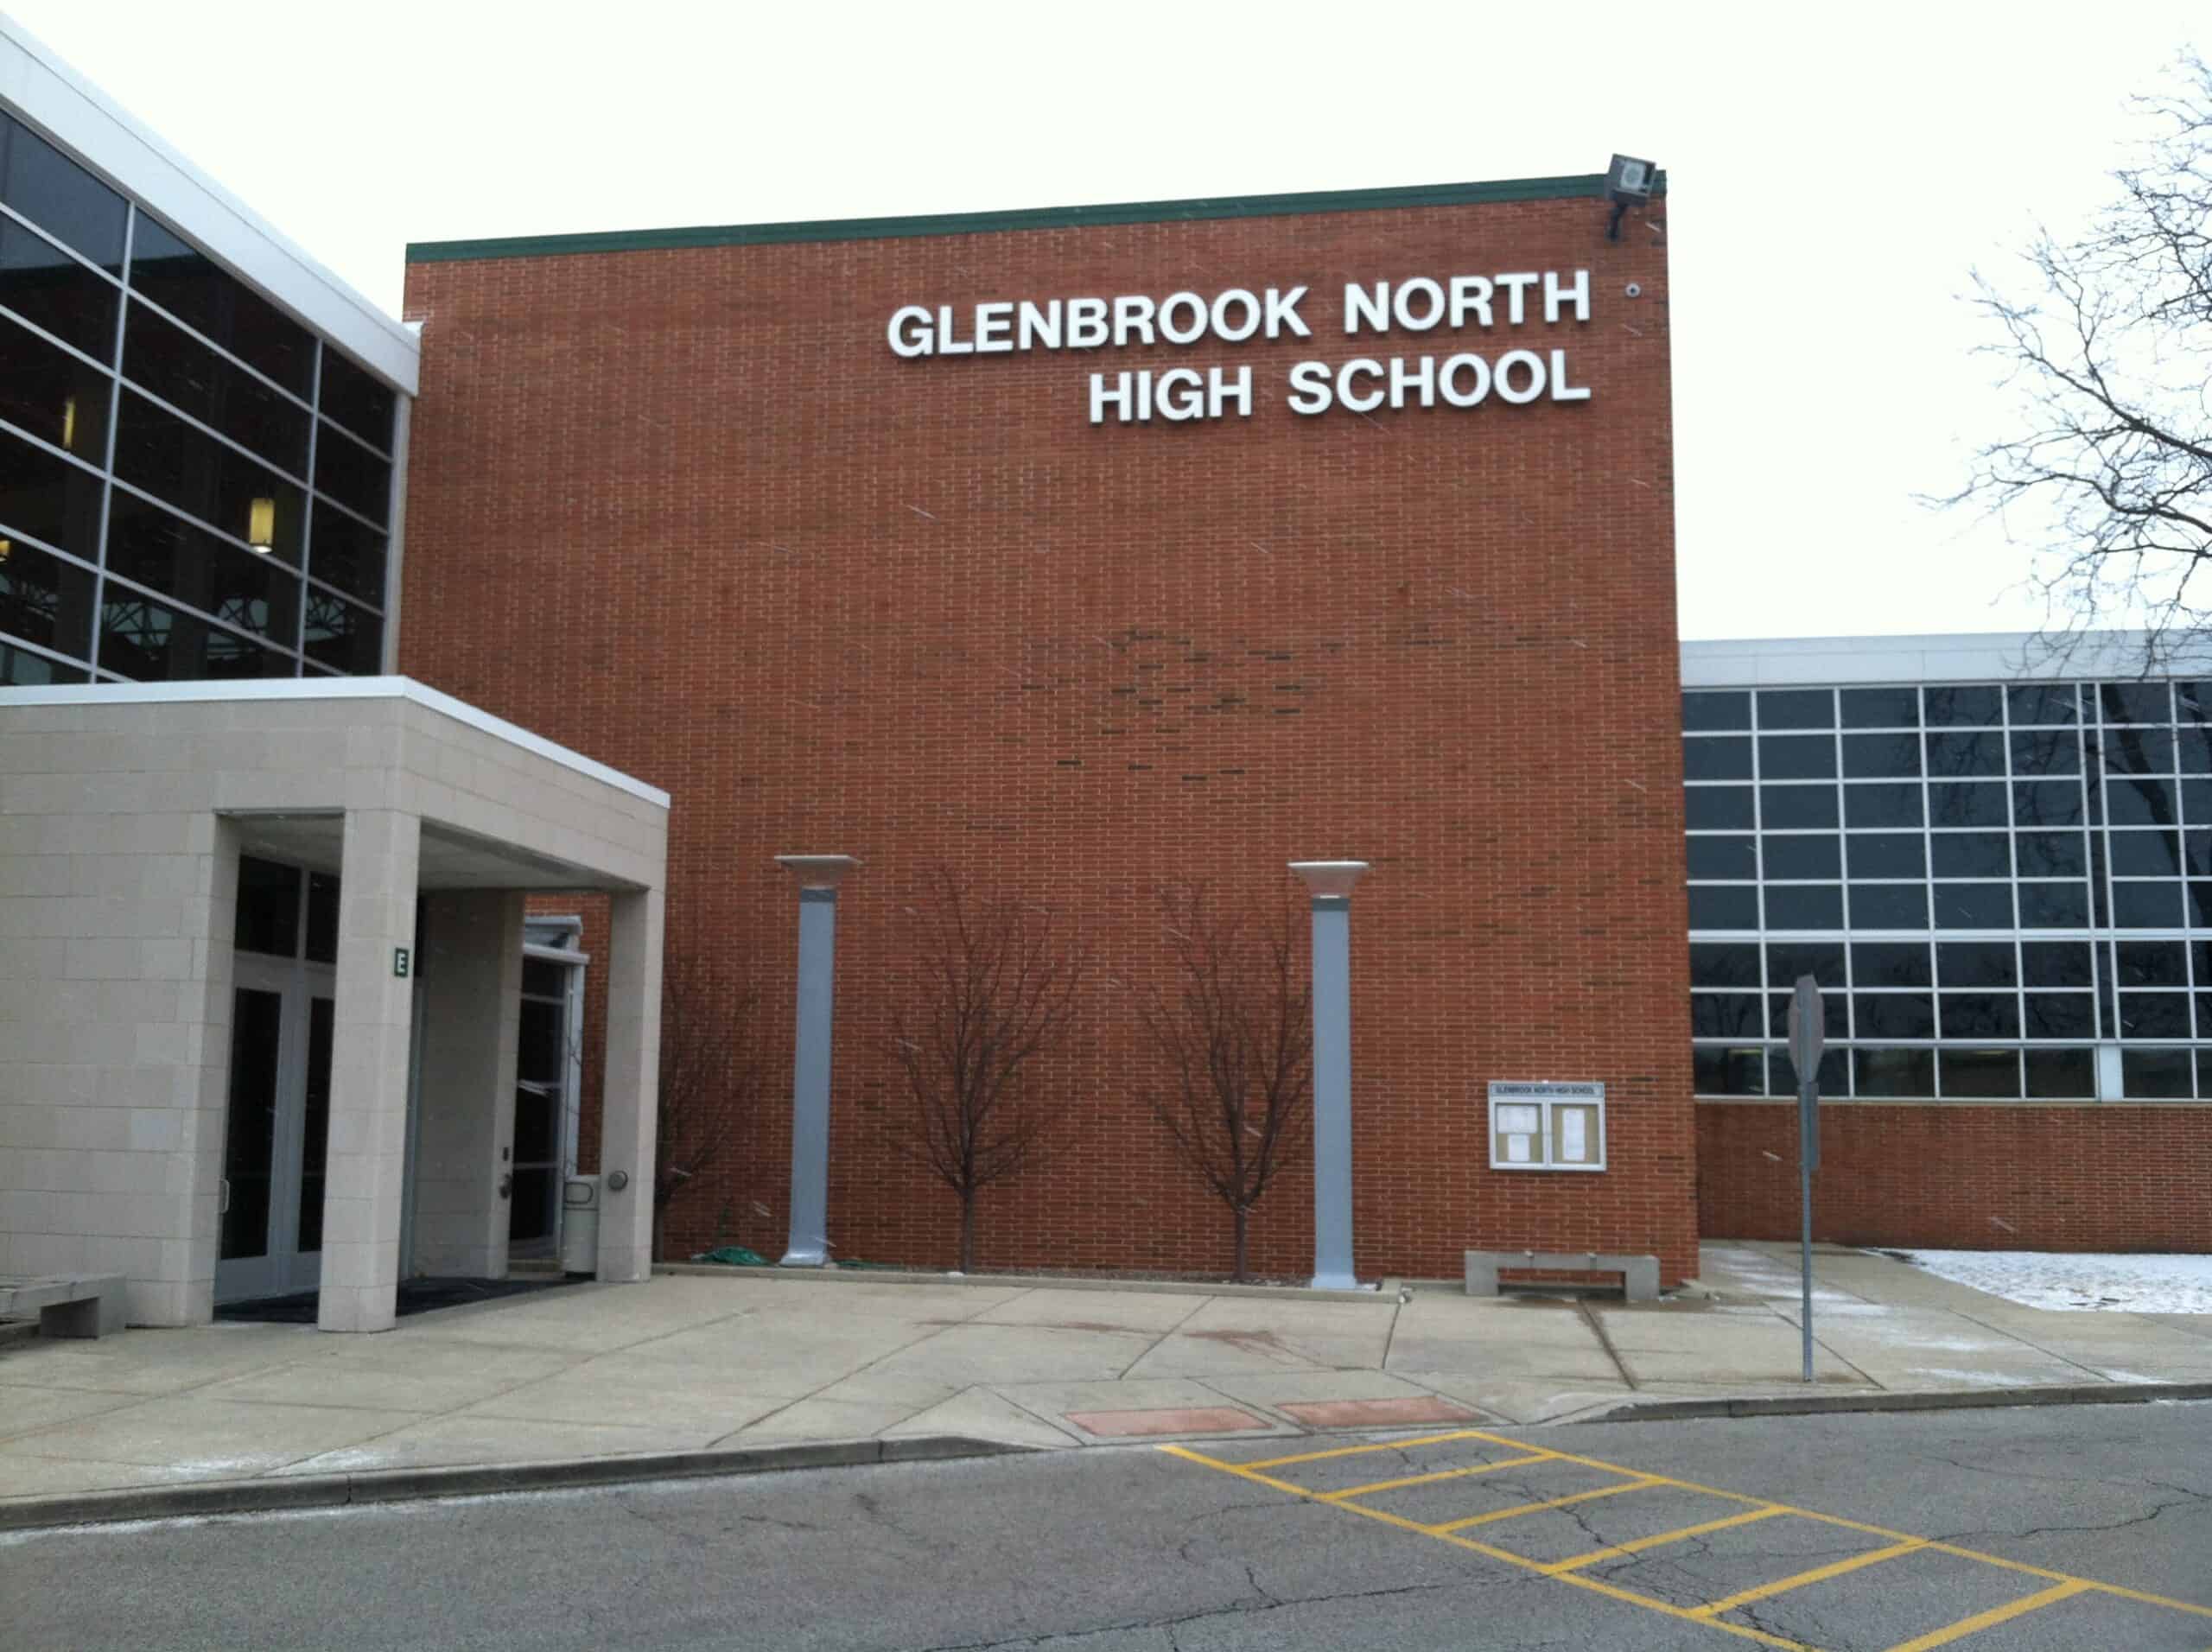 GlenbrookNorth2 by Dustin Batt